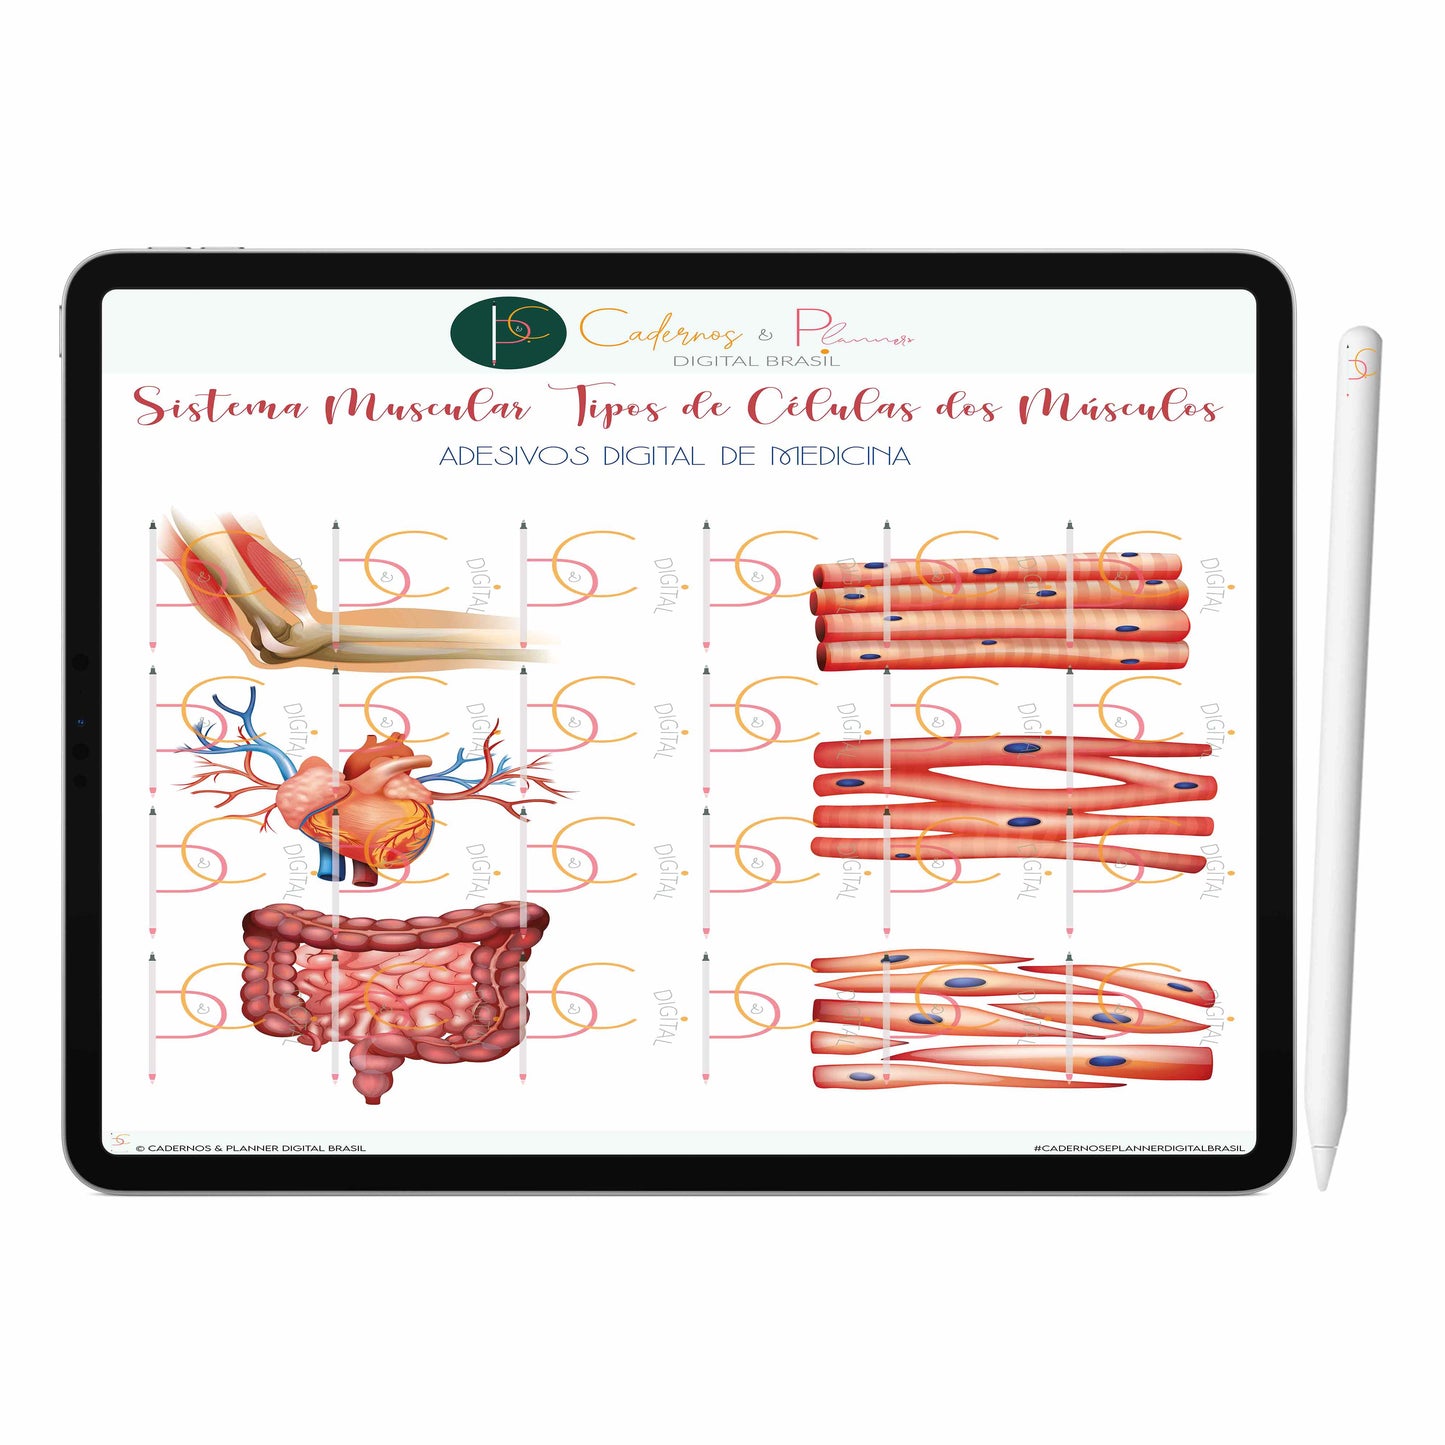 Adesivos Digital de Medicina - Sistema Muscular Anatomia do Músculo Humano Tipos de Células dos Músculos • iPad Tablet • GoodNotes Noteshelf